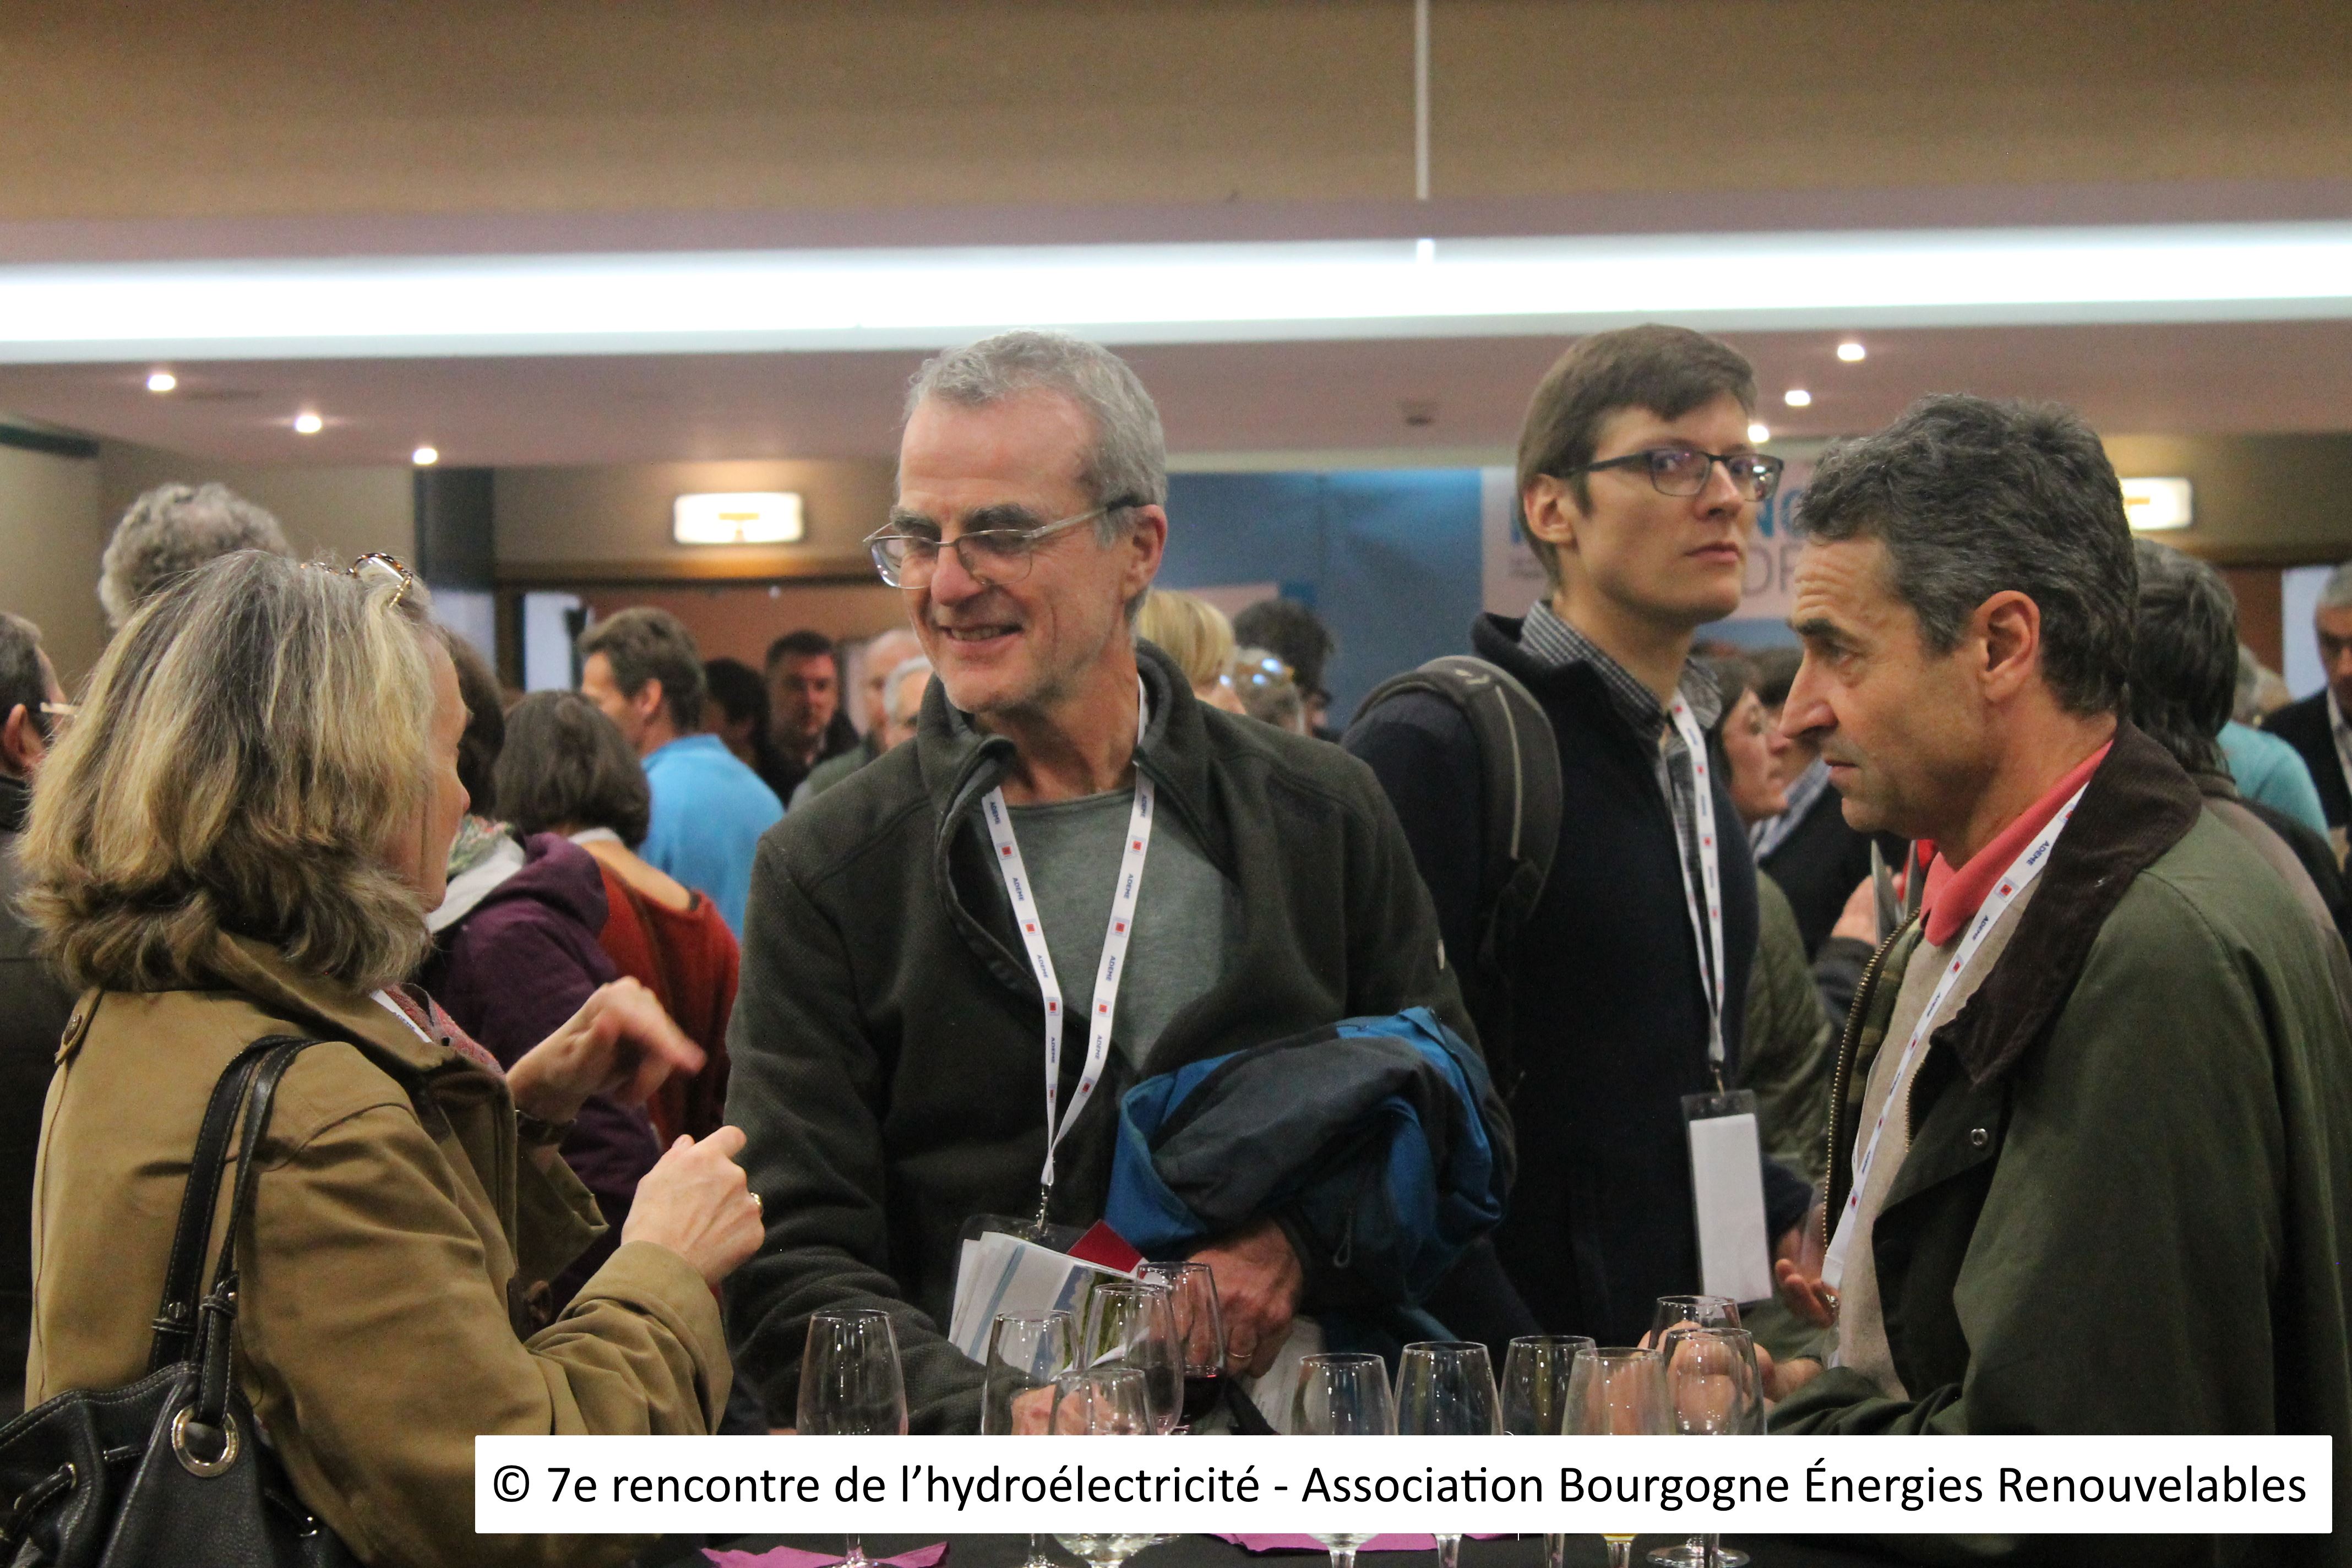 12 - © 7e rencontre de l’hydroélectricité - Association Bourgogne Énergies Renouvelables